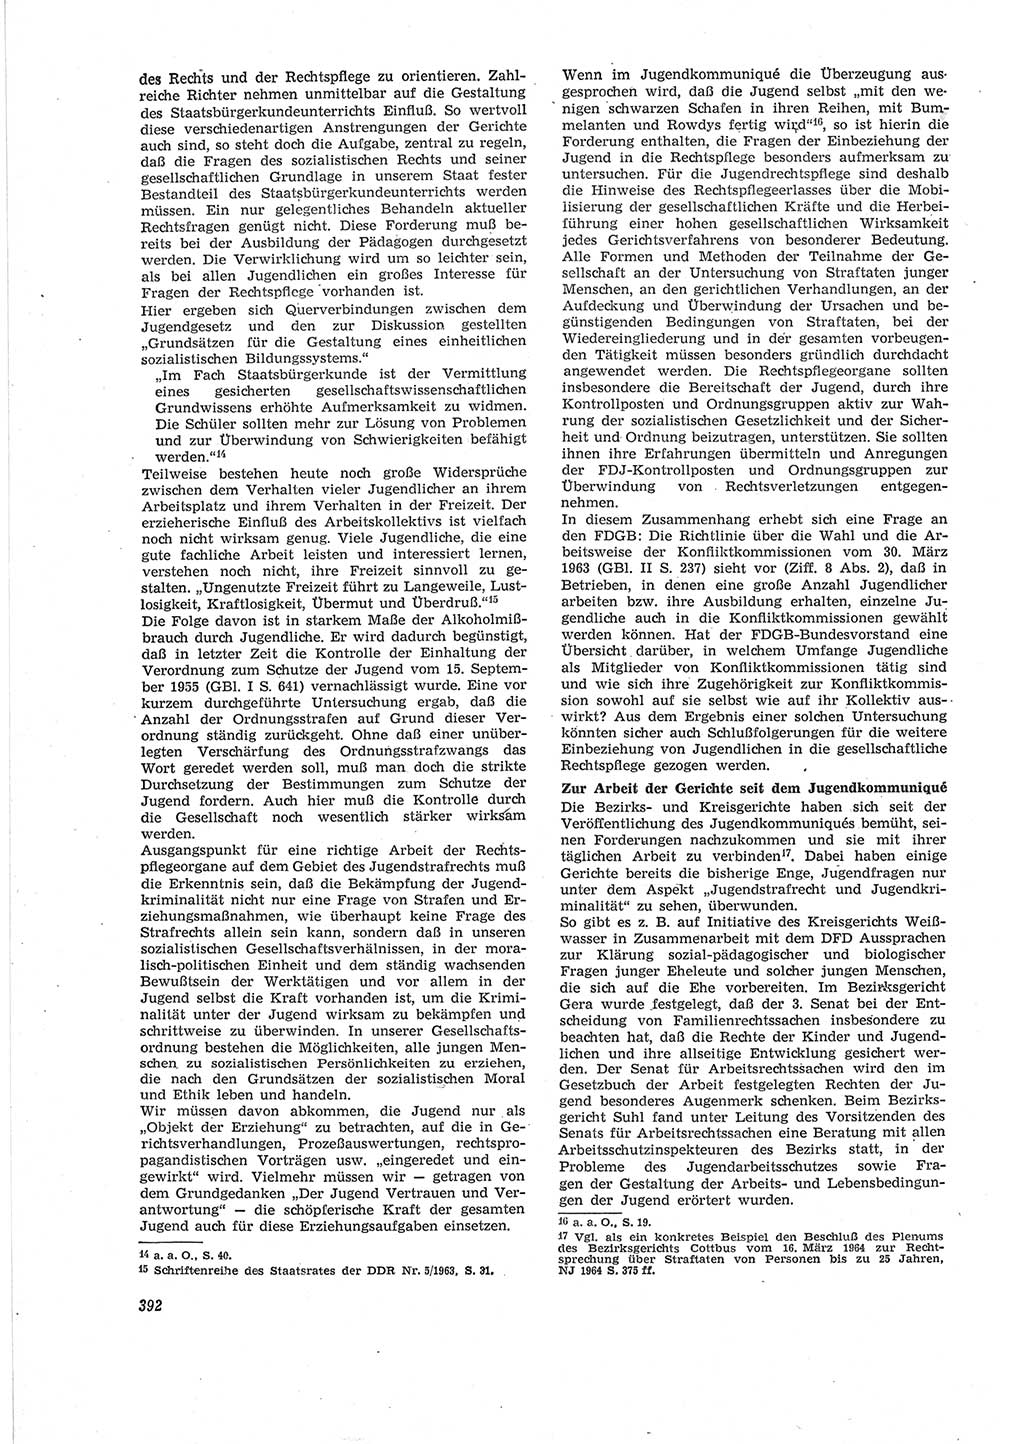 Neue Justiz (NJ), Zeitschrift für Recht und Rechtswissenschaft [Deutsche Demokratische Republik (DDR)], 18. Jahrgang 1964, Seite 392 (NJ DDR 1964, S. 392)